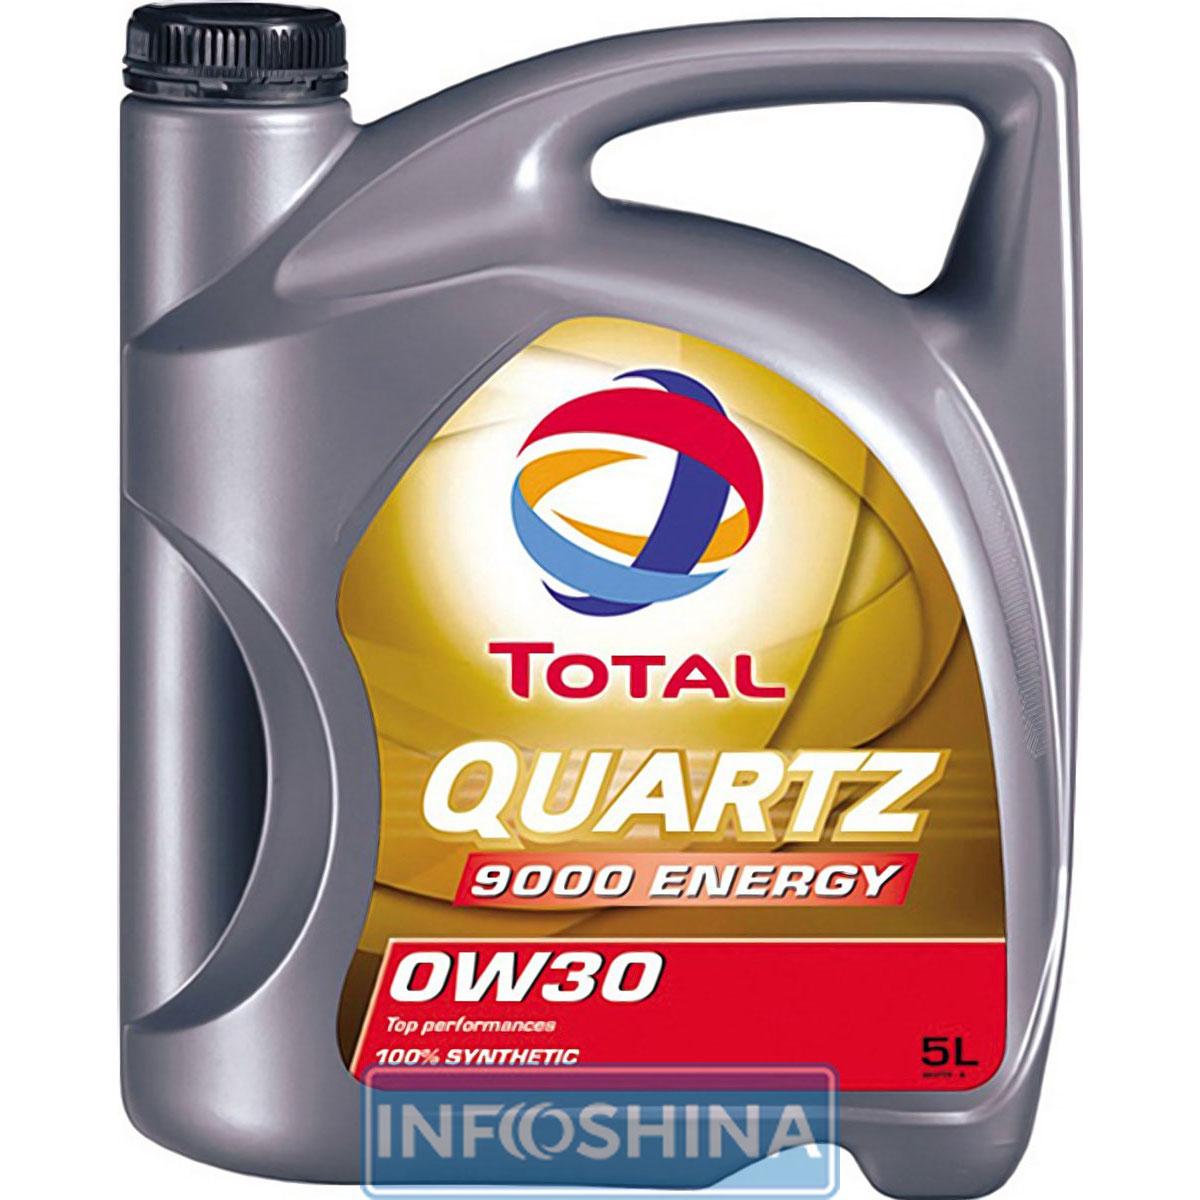 Купить масло Total Quartz 9000 Energy 0W-30 (5л)